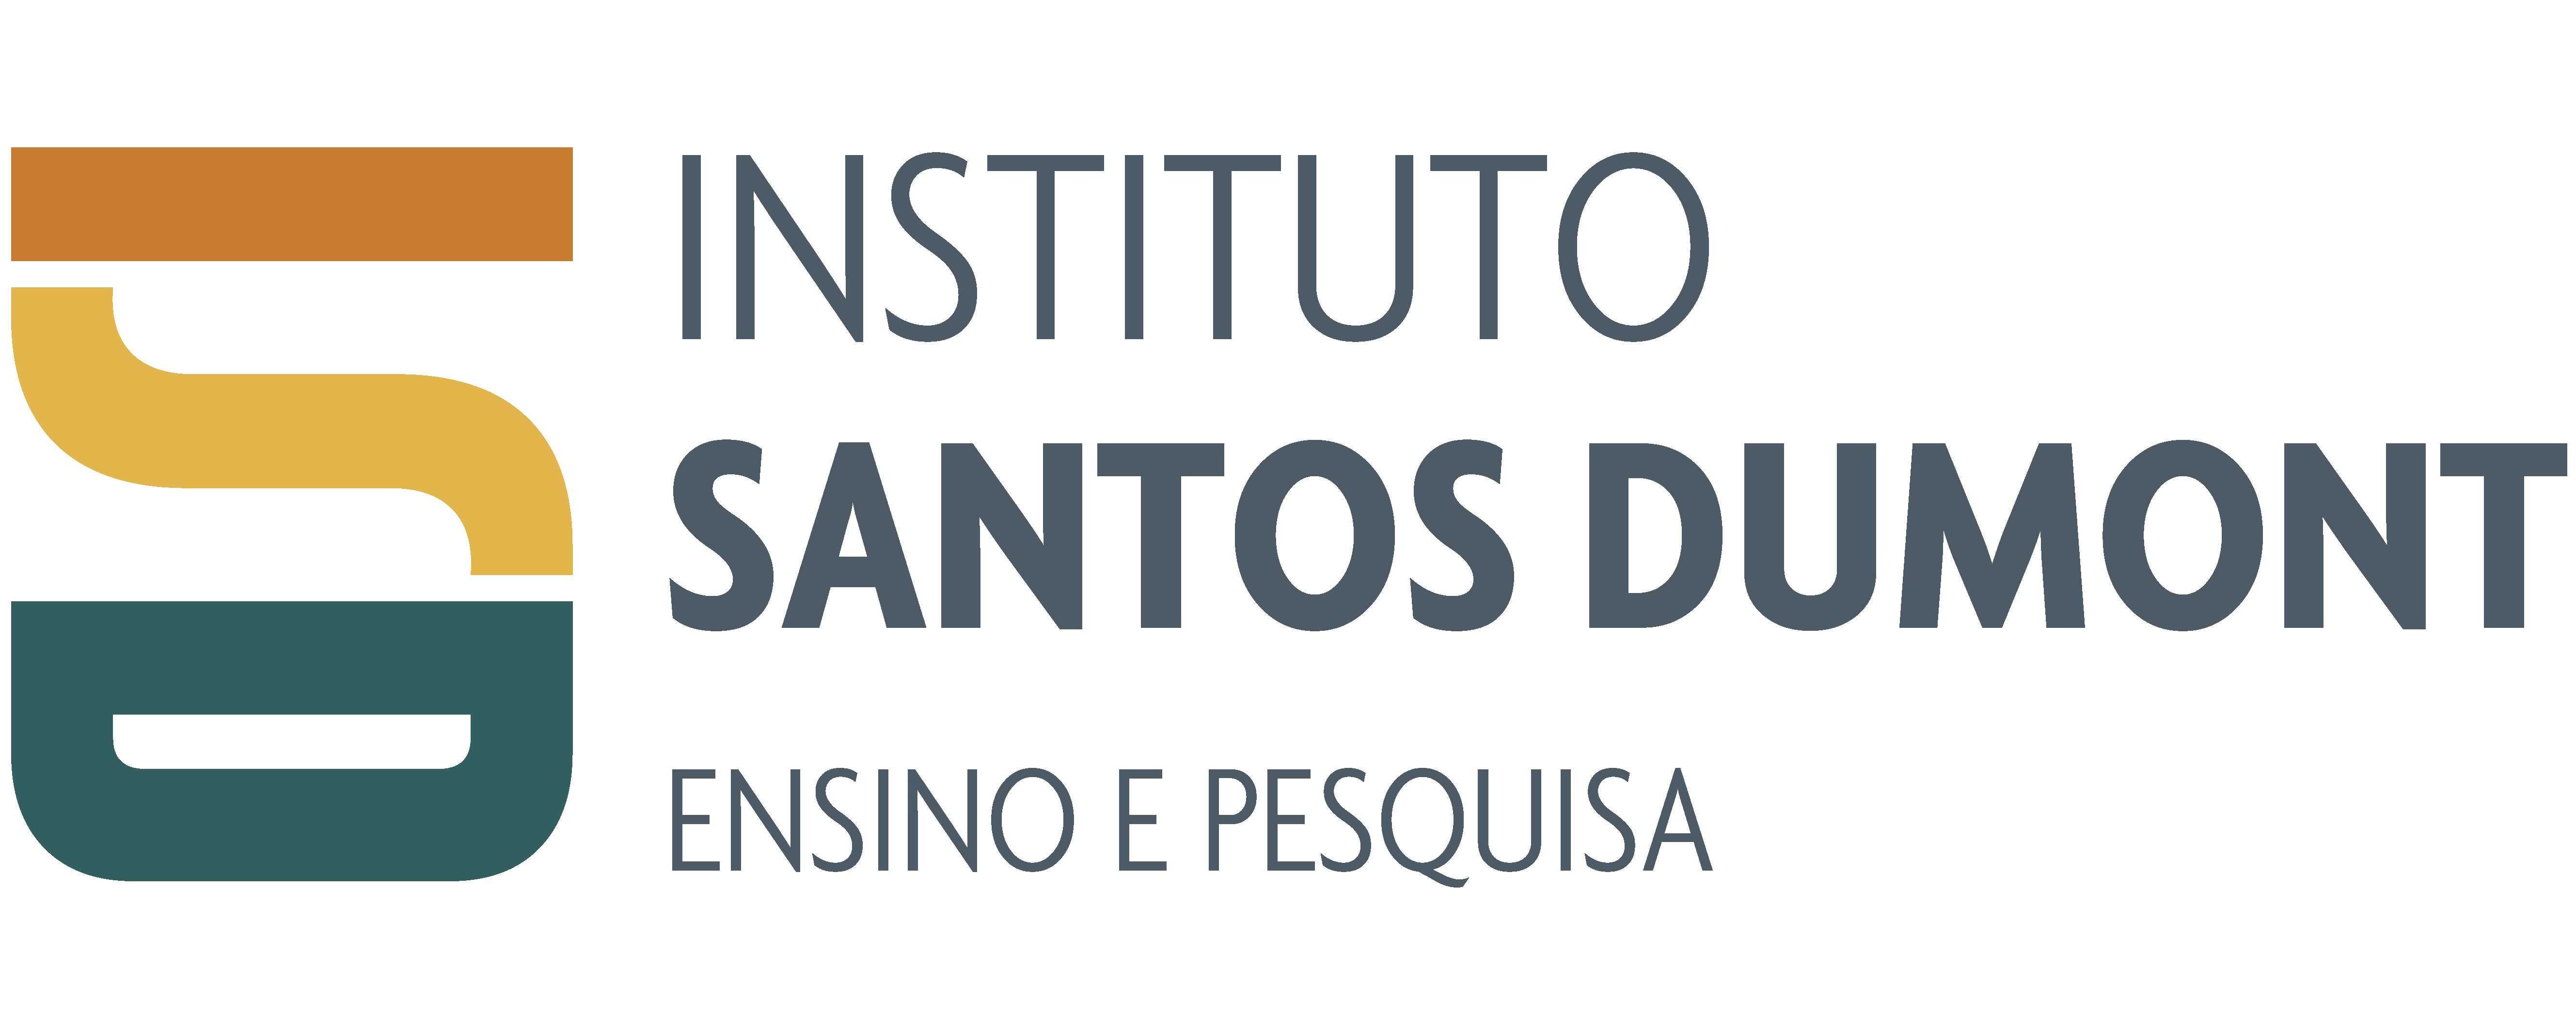 Santos Dumont Institute